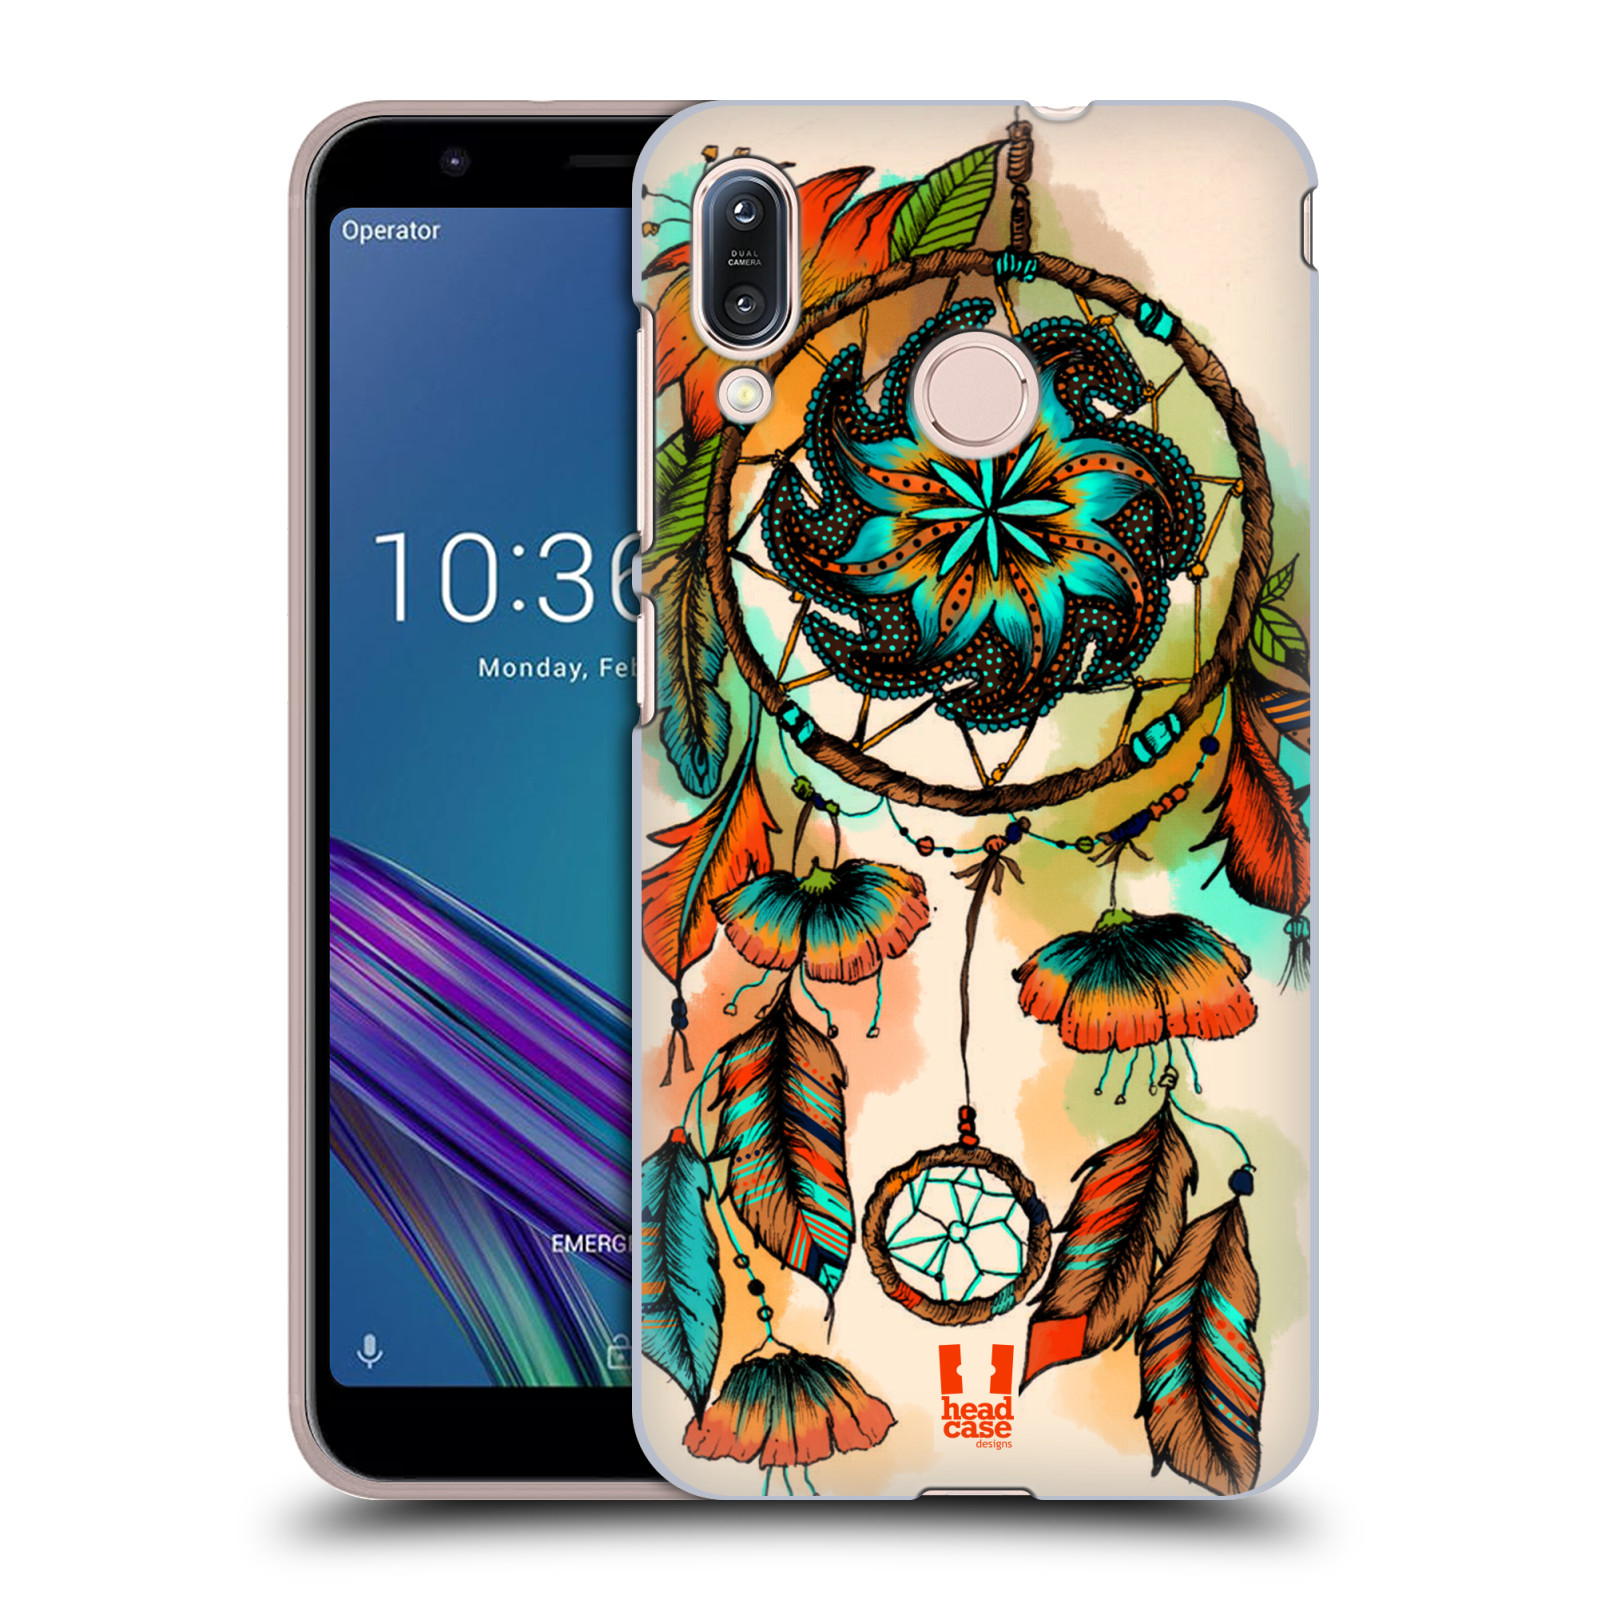 Pouzdro na mobil Asus Zenfone Max M1 (ZB555KL) - HEAD CASE - vzor Květy lapač snů merňka oranžová